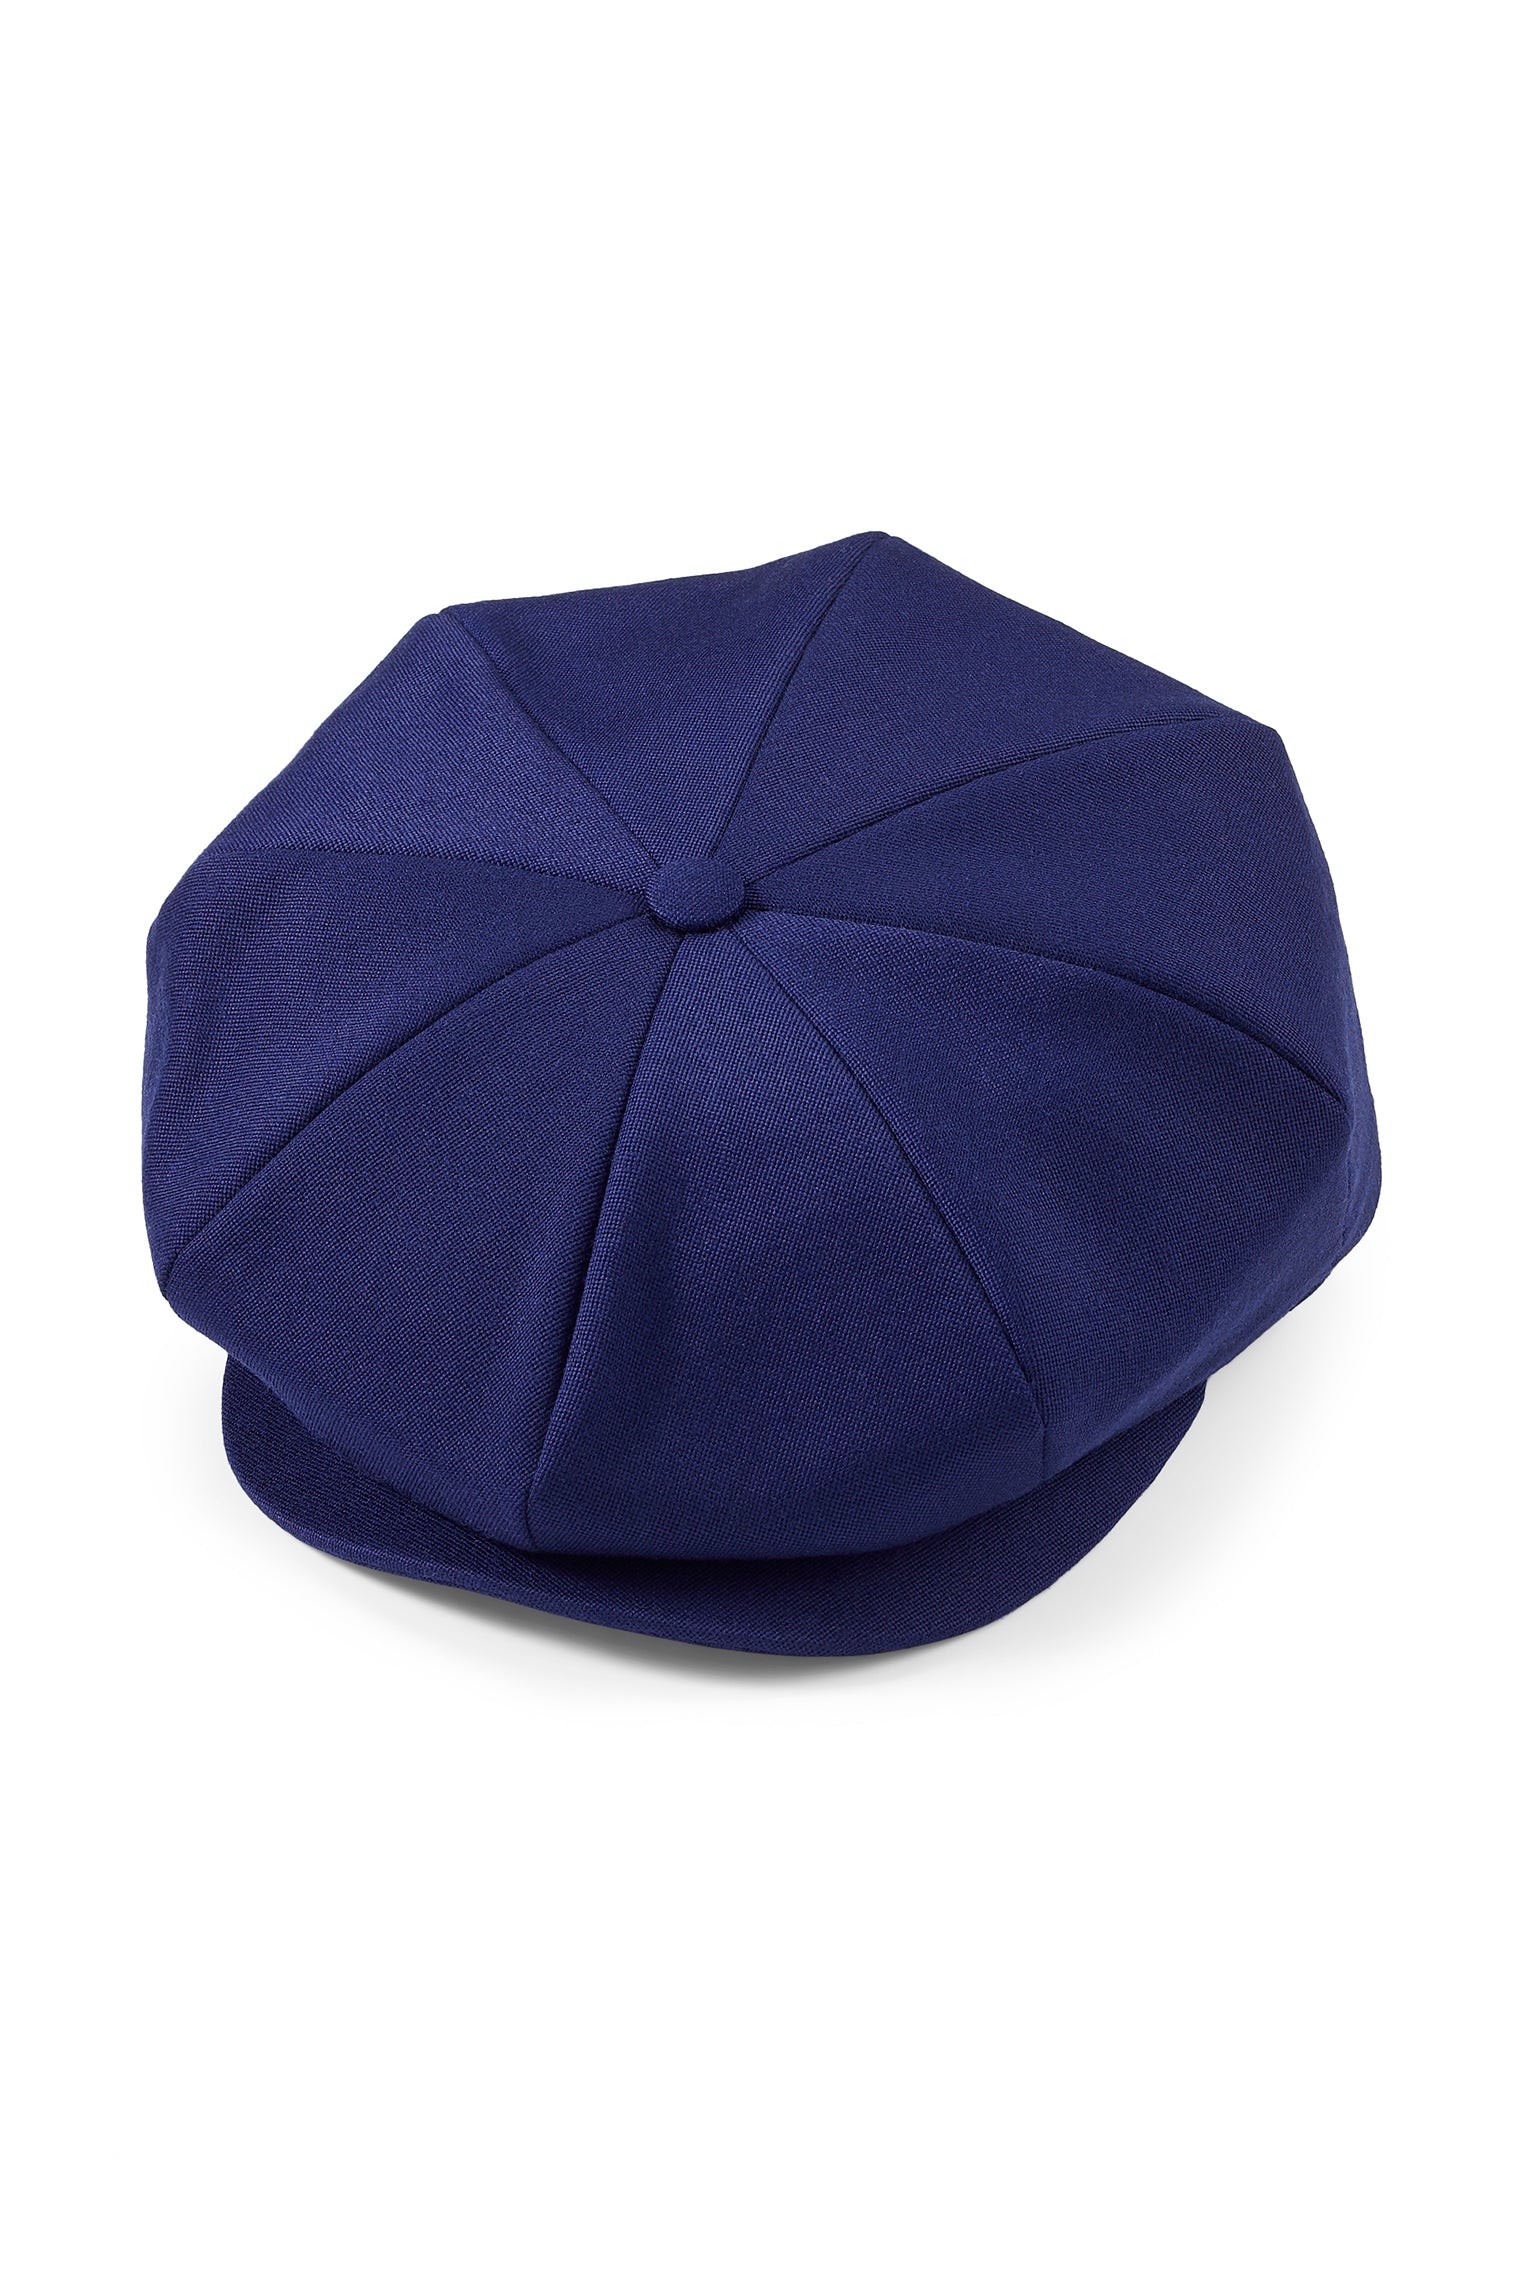 Tremelo Dark Blue Bakerboy Cap - New Season Men's Hats - Lock & Co. Hatters London UK